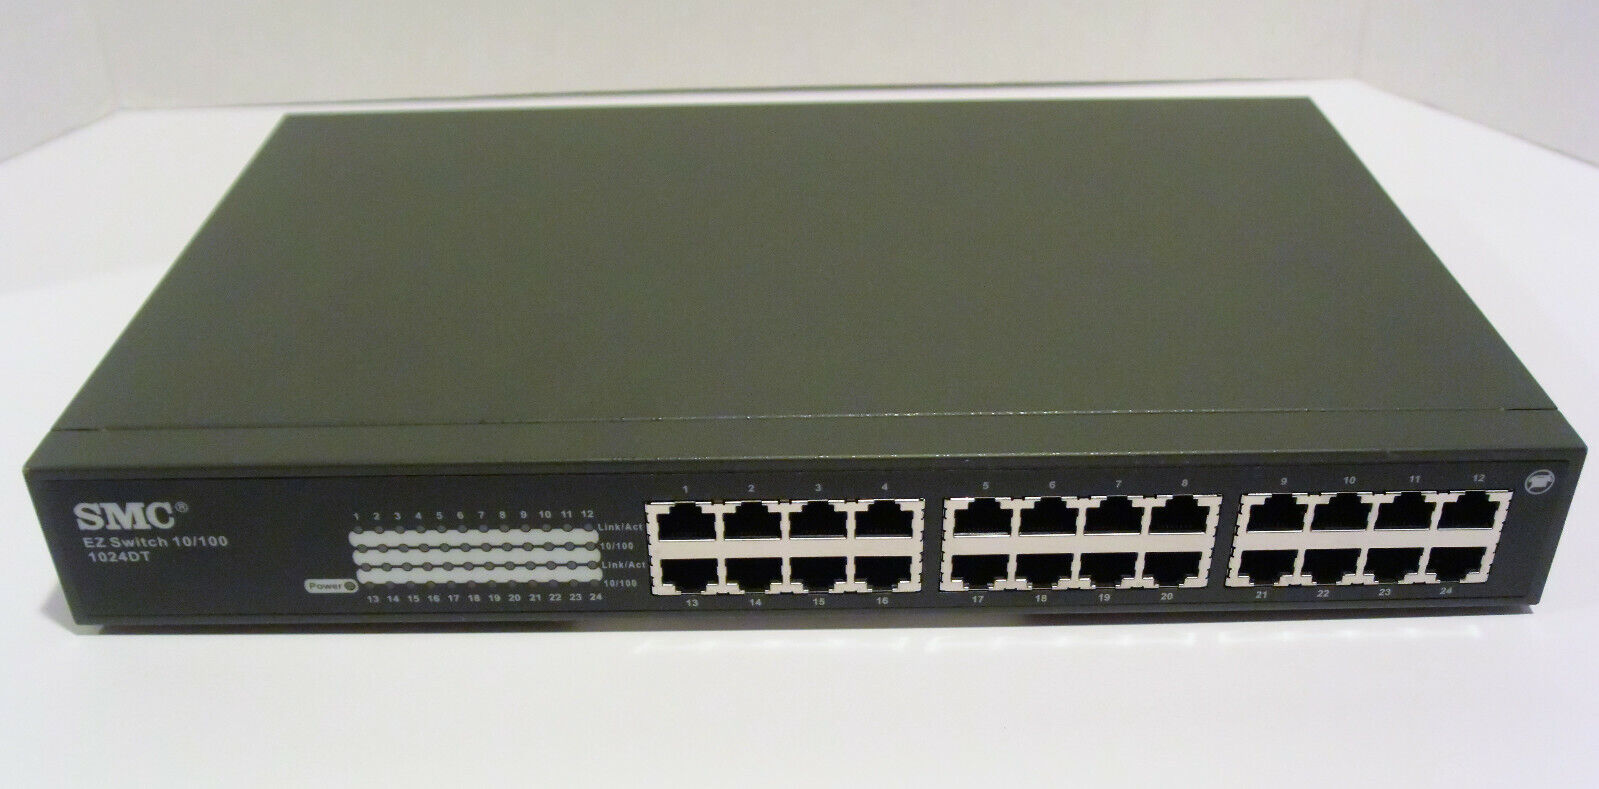 SMC Networks 24-Port EZ Switch 10/100Mbps Model SMC-EZ 1024DT Ethernet Hub Unit 